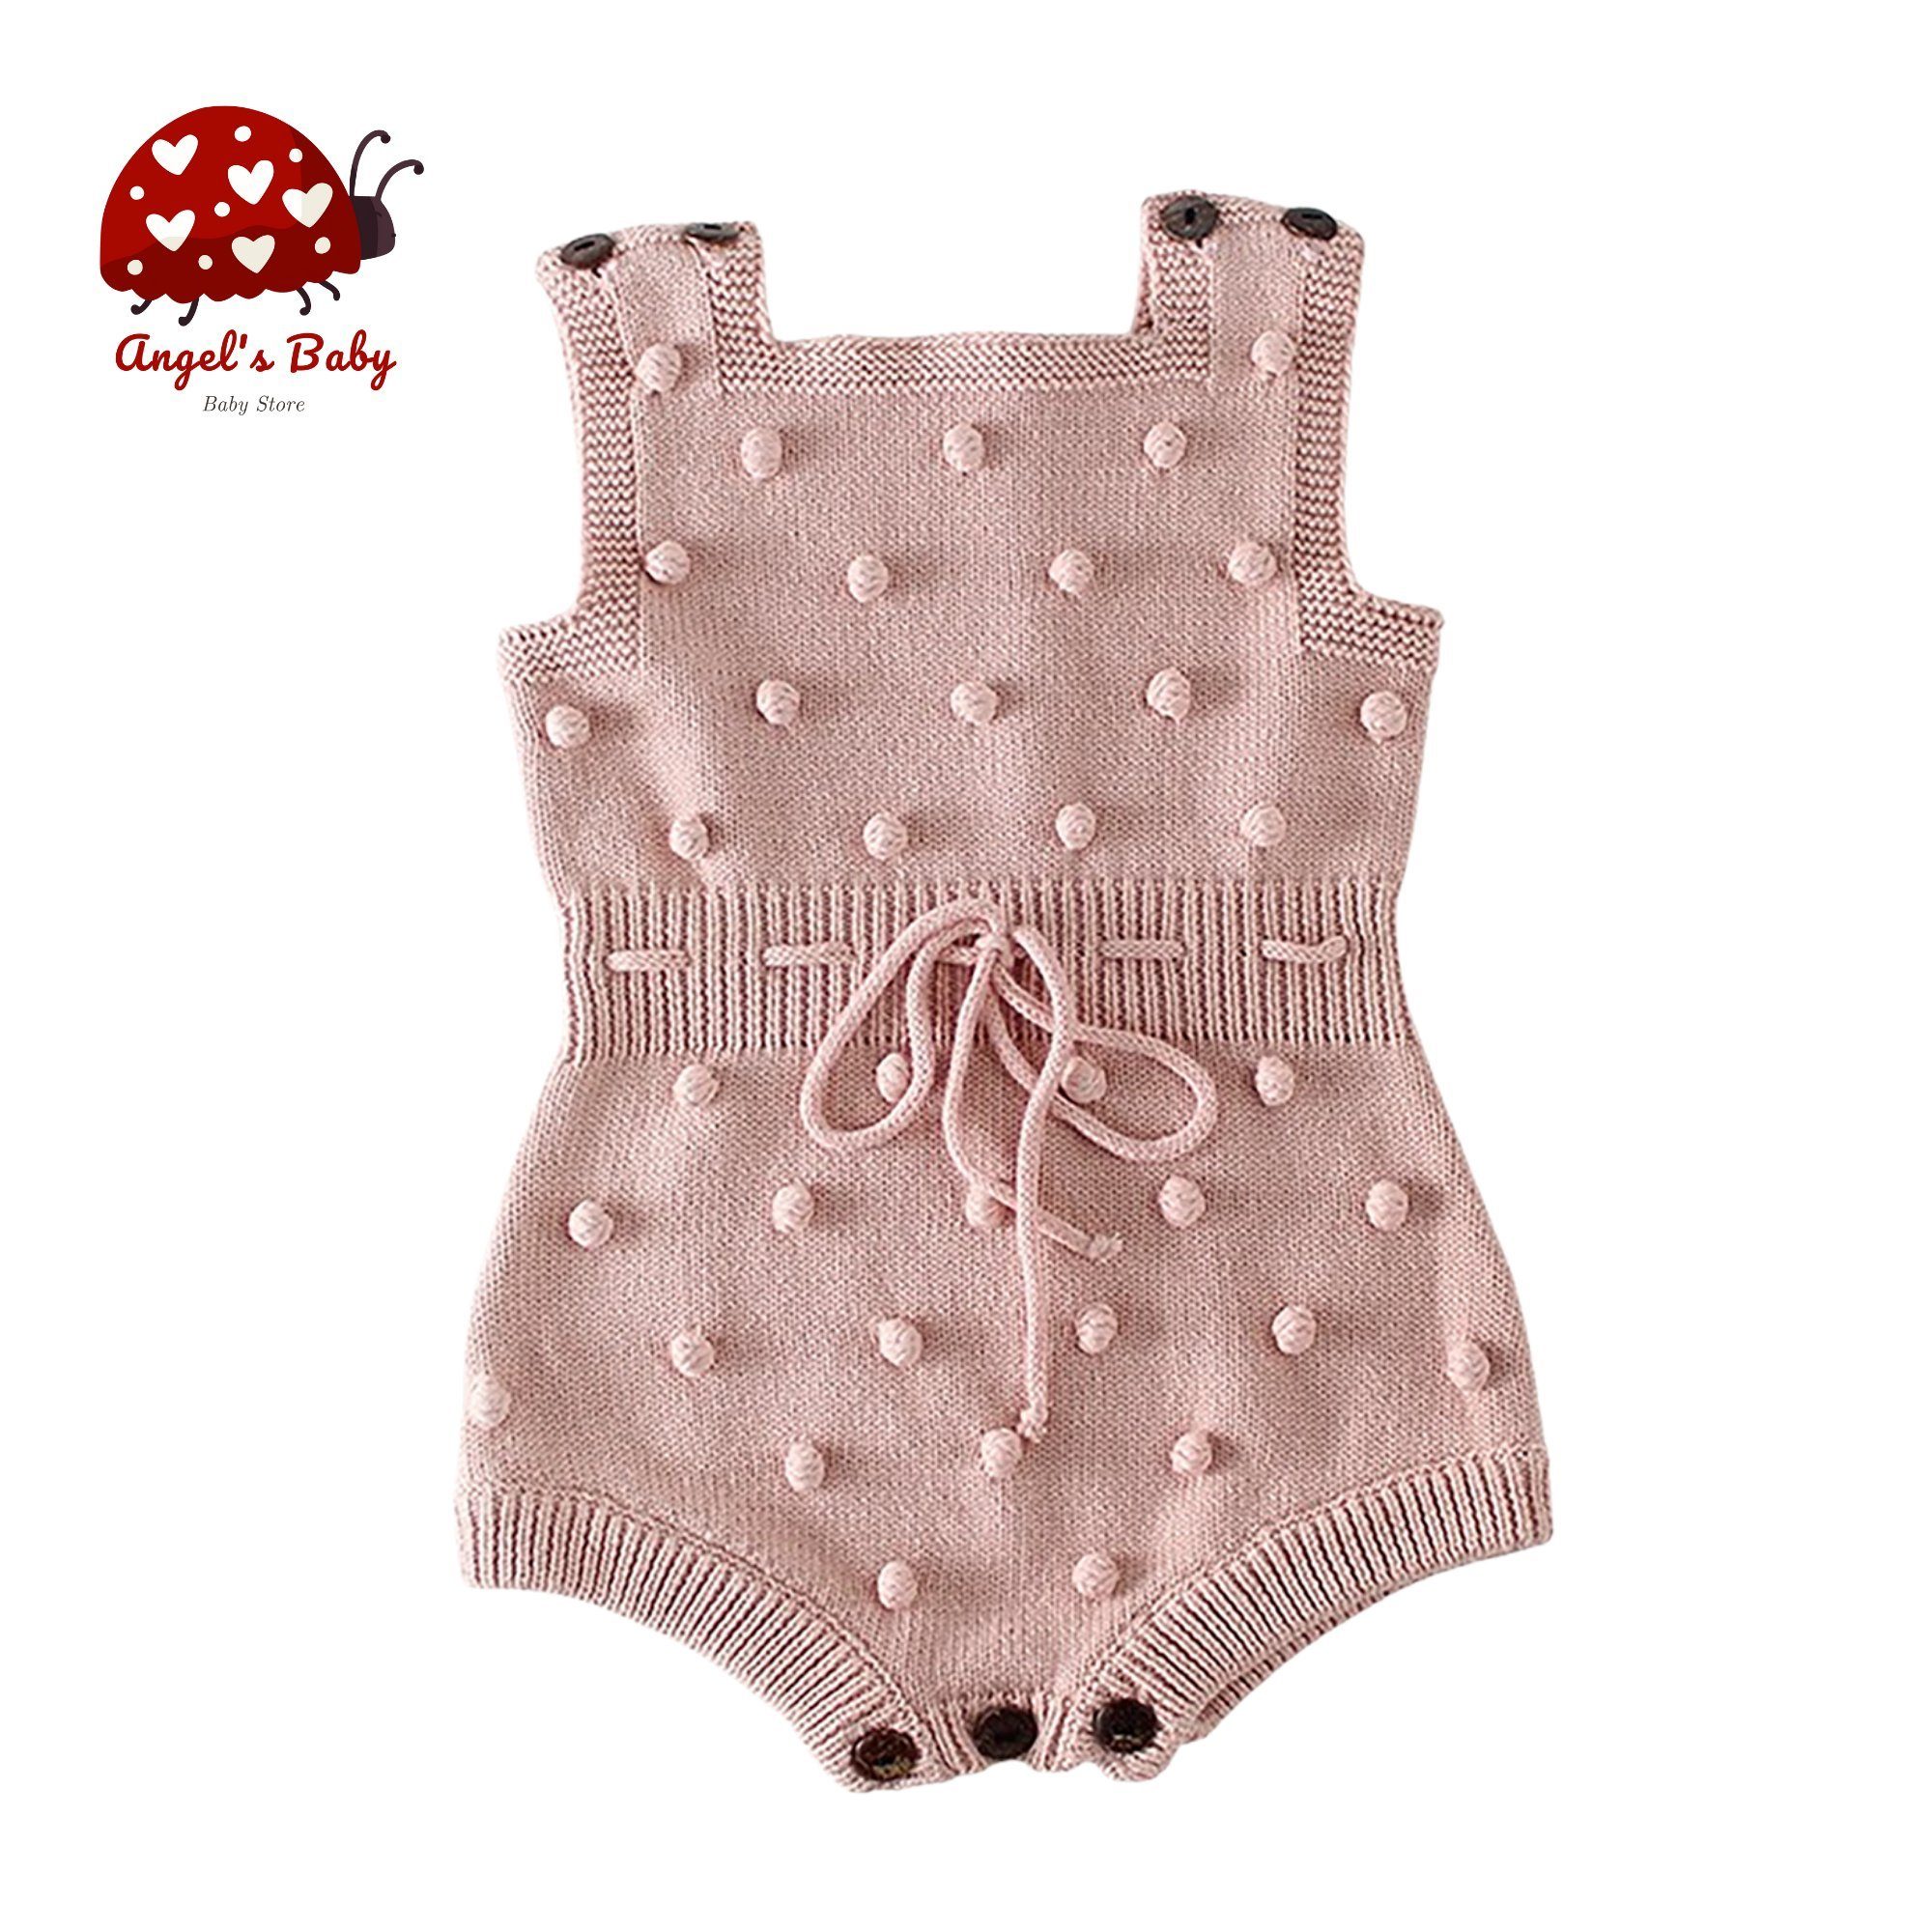 Angel's Baby Strampler Baby Kurzoverall Jumpsuit in Strick aus Baumwolle für Mädchen in tollem Design altrosa